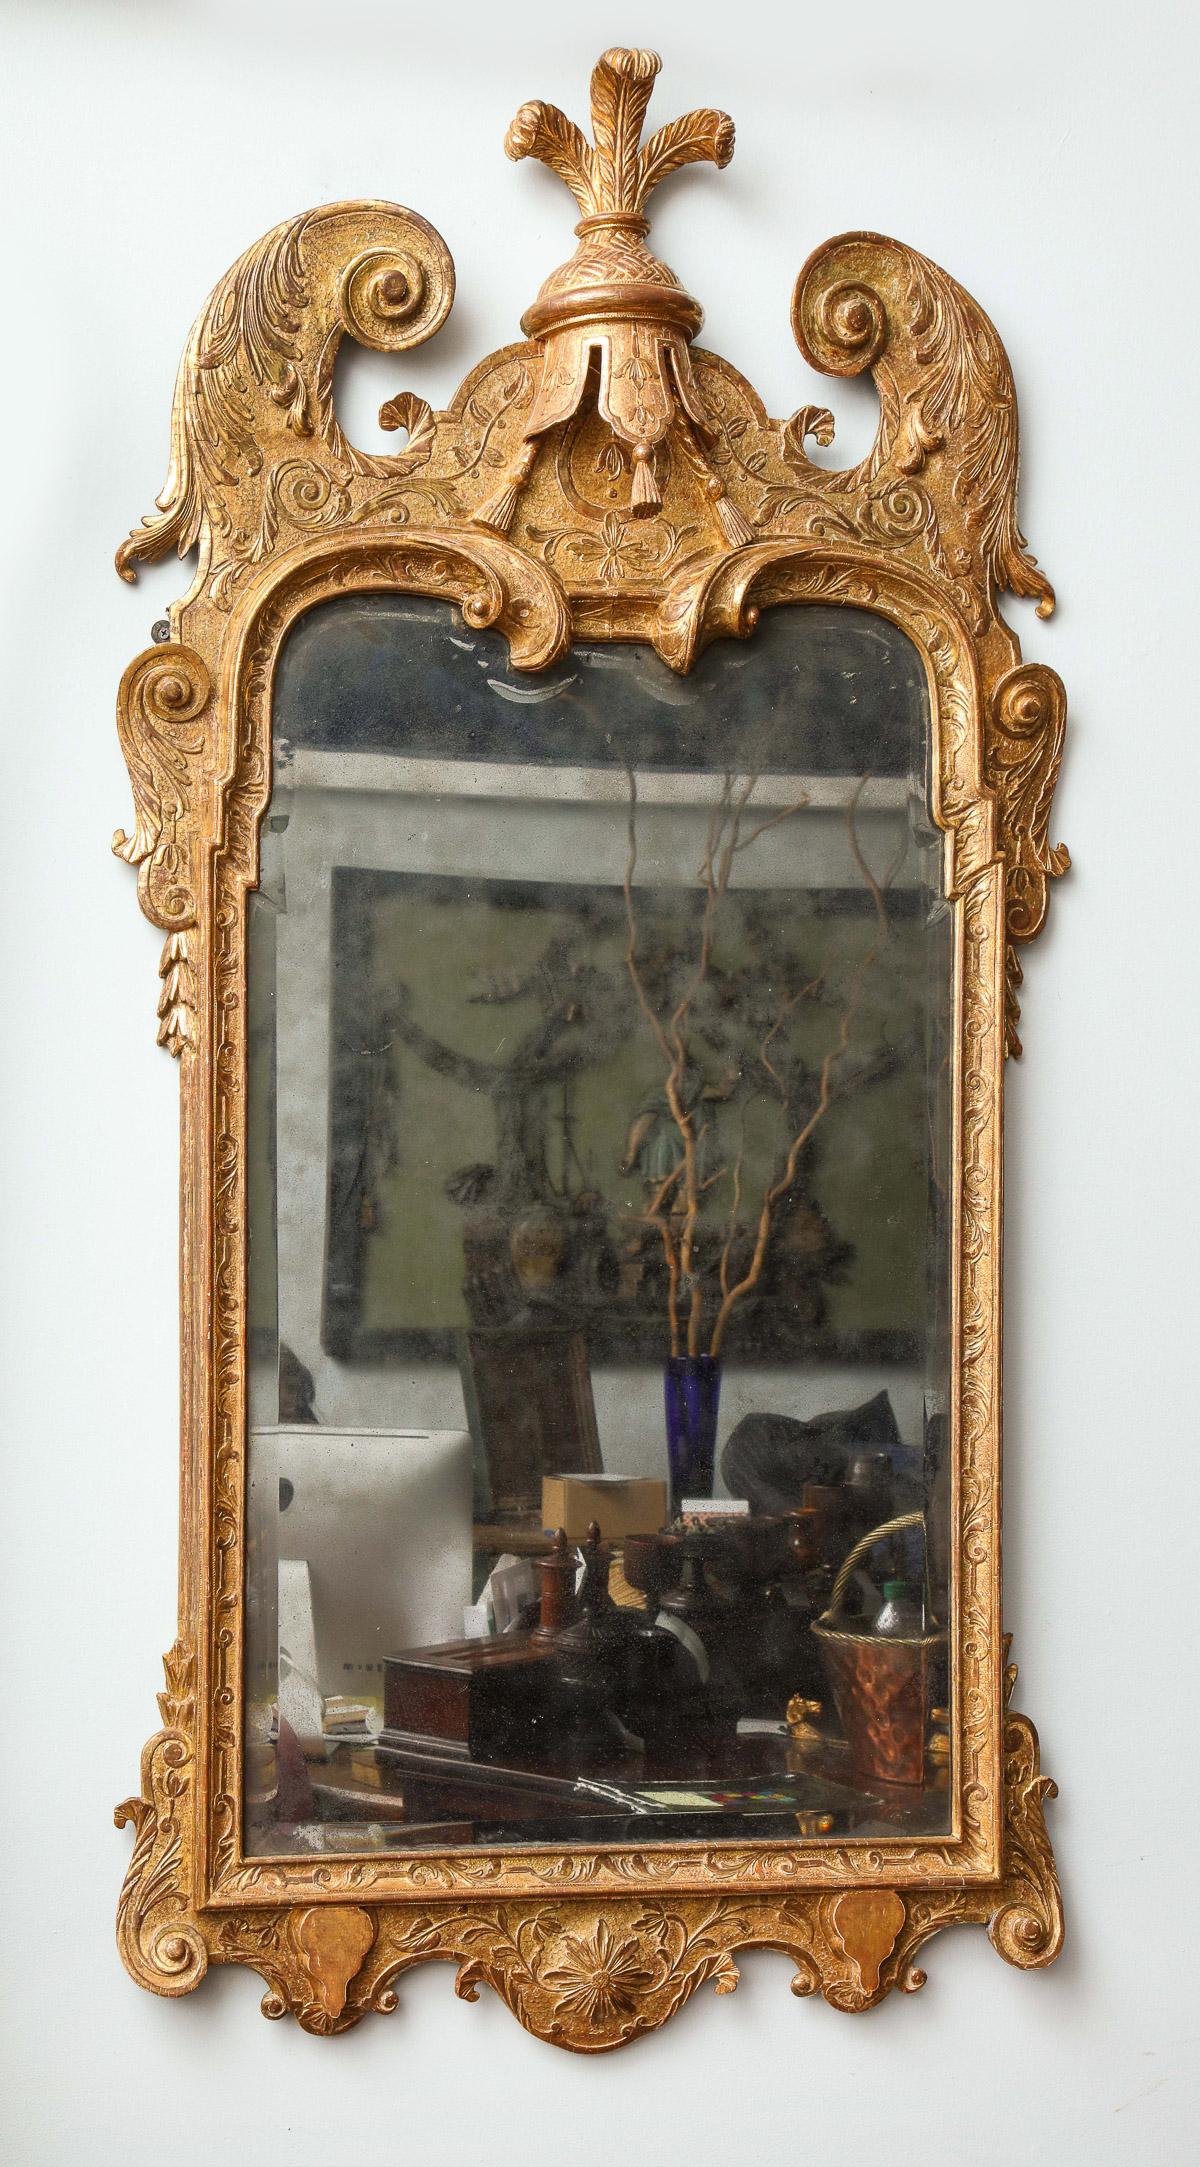 Très beau miroir sculpté et doré de style George I, vers 1720, à la manière de John Belchier, avec un plumet en plumes d'autruche sur un lambrequin central à glands, de profonds fleurons sculptés en saillie, la plaque d'origine en verre au mercure